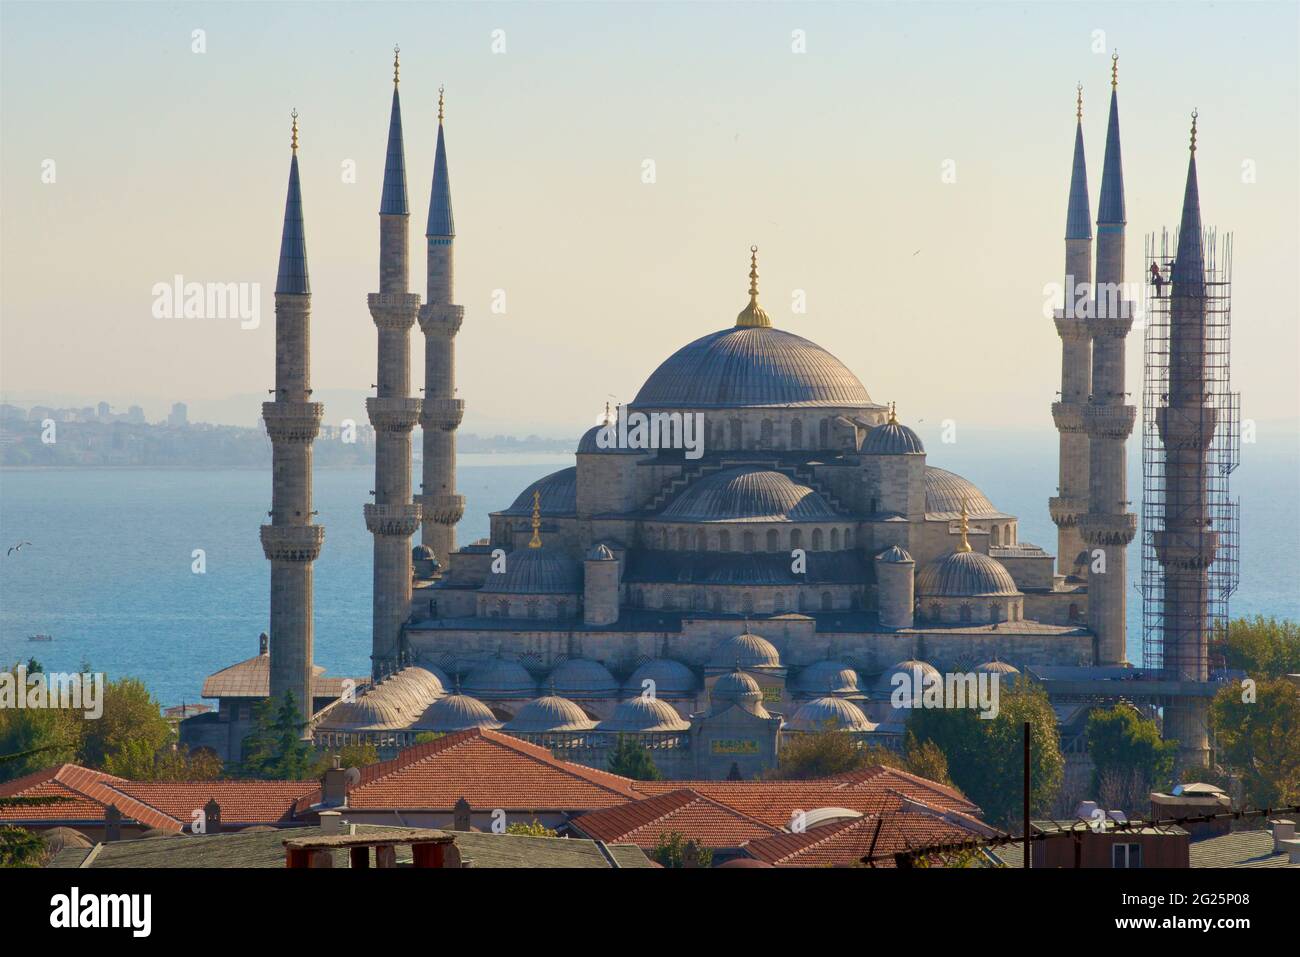 Mosquée Sultan Ahmed (turc : Sultan Ahmet Camii), également connue sous le nom de Mosquée bleue. Une mosquée du vendredi de l'époque ottomane située à Istanbul, en Turquie. Bosphore au-delà Banque D'Images